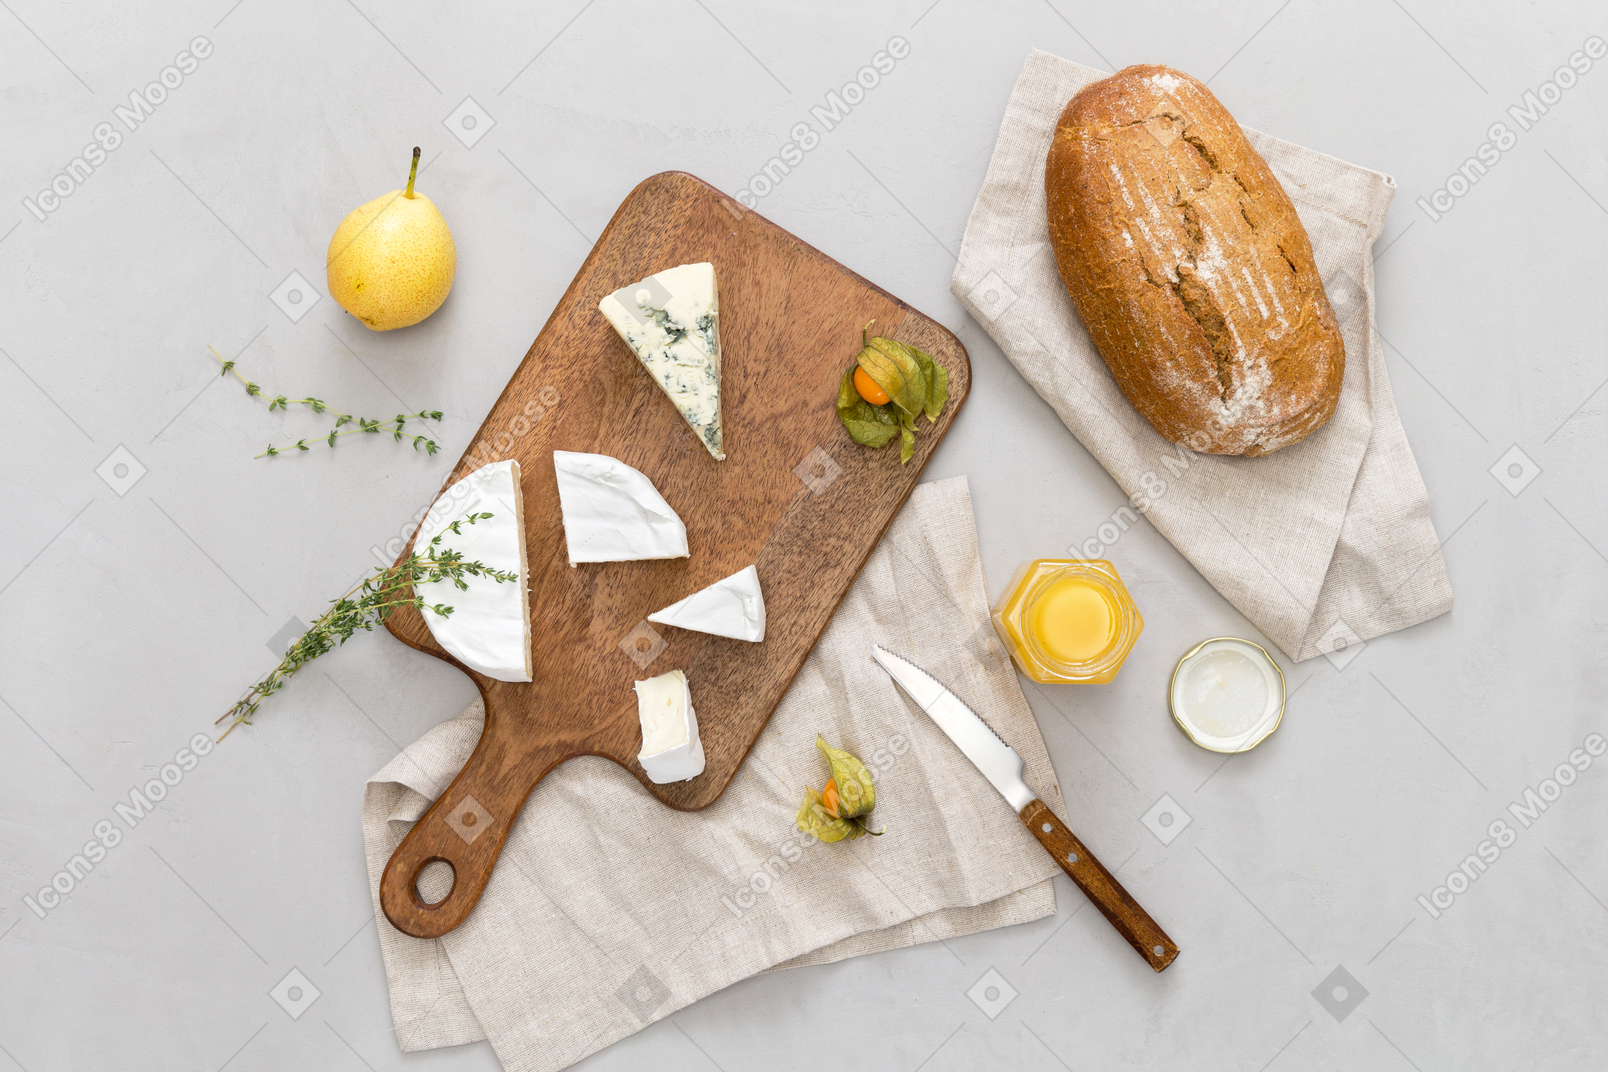 Pane nero, un po 'di formaggio, un vasetto di miele e una pera